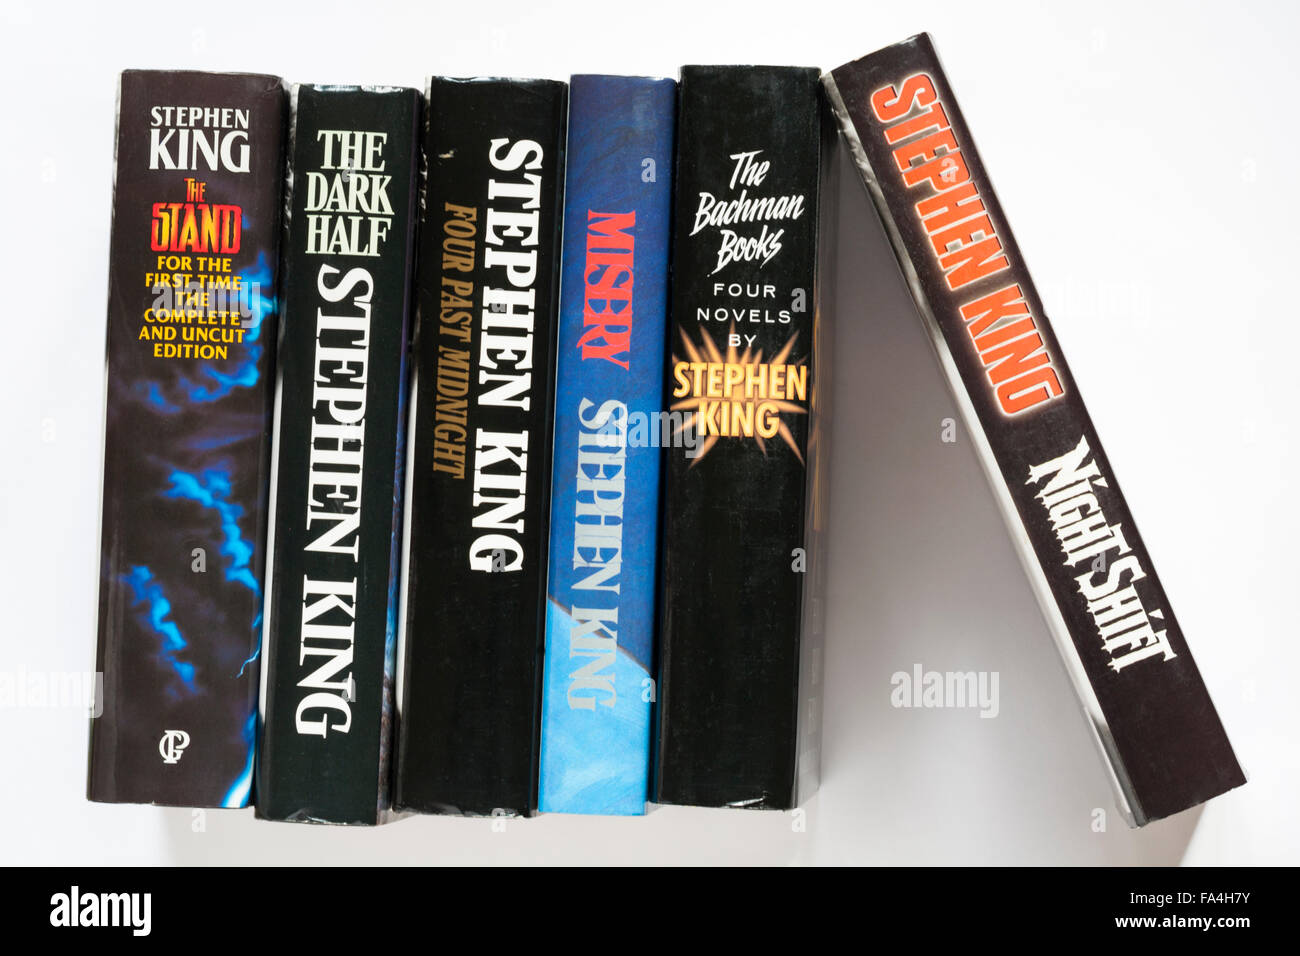 Fila di Stephen King libri tra cui quattro oltre la mezzanotte, la metà scura, Stand, Turno di notte, miseria e quattro romanzi di Stephen King su bianco Foto Stock